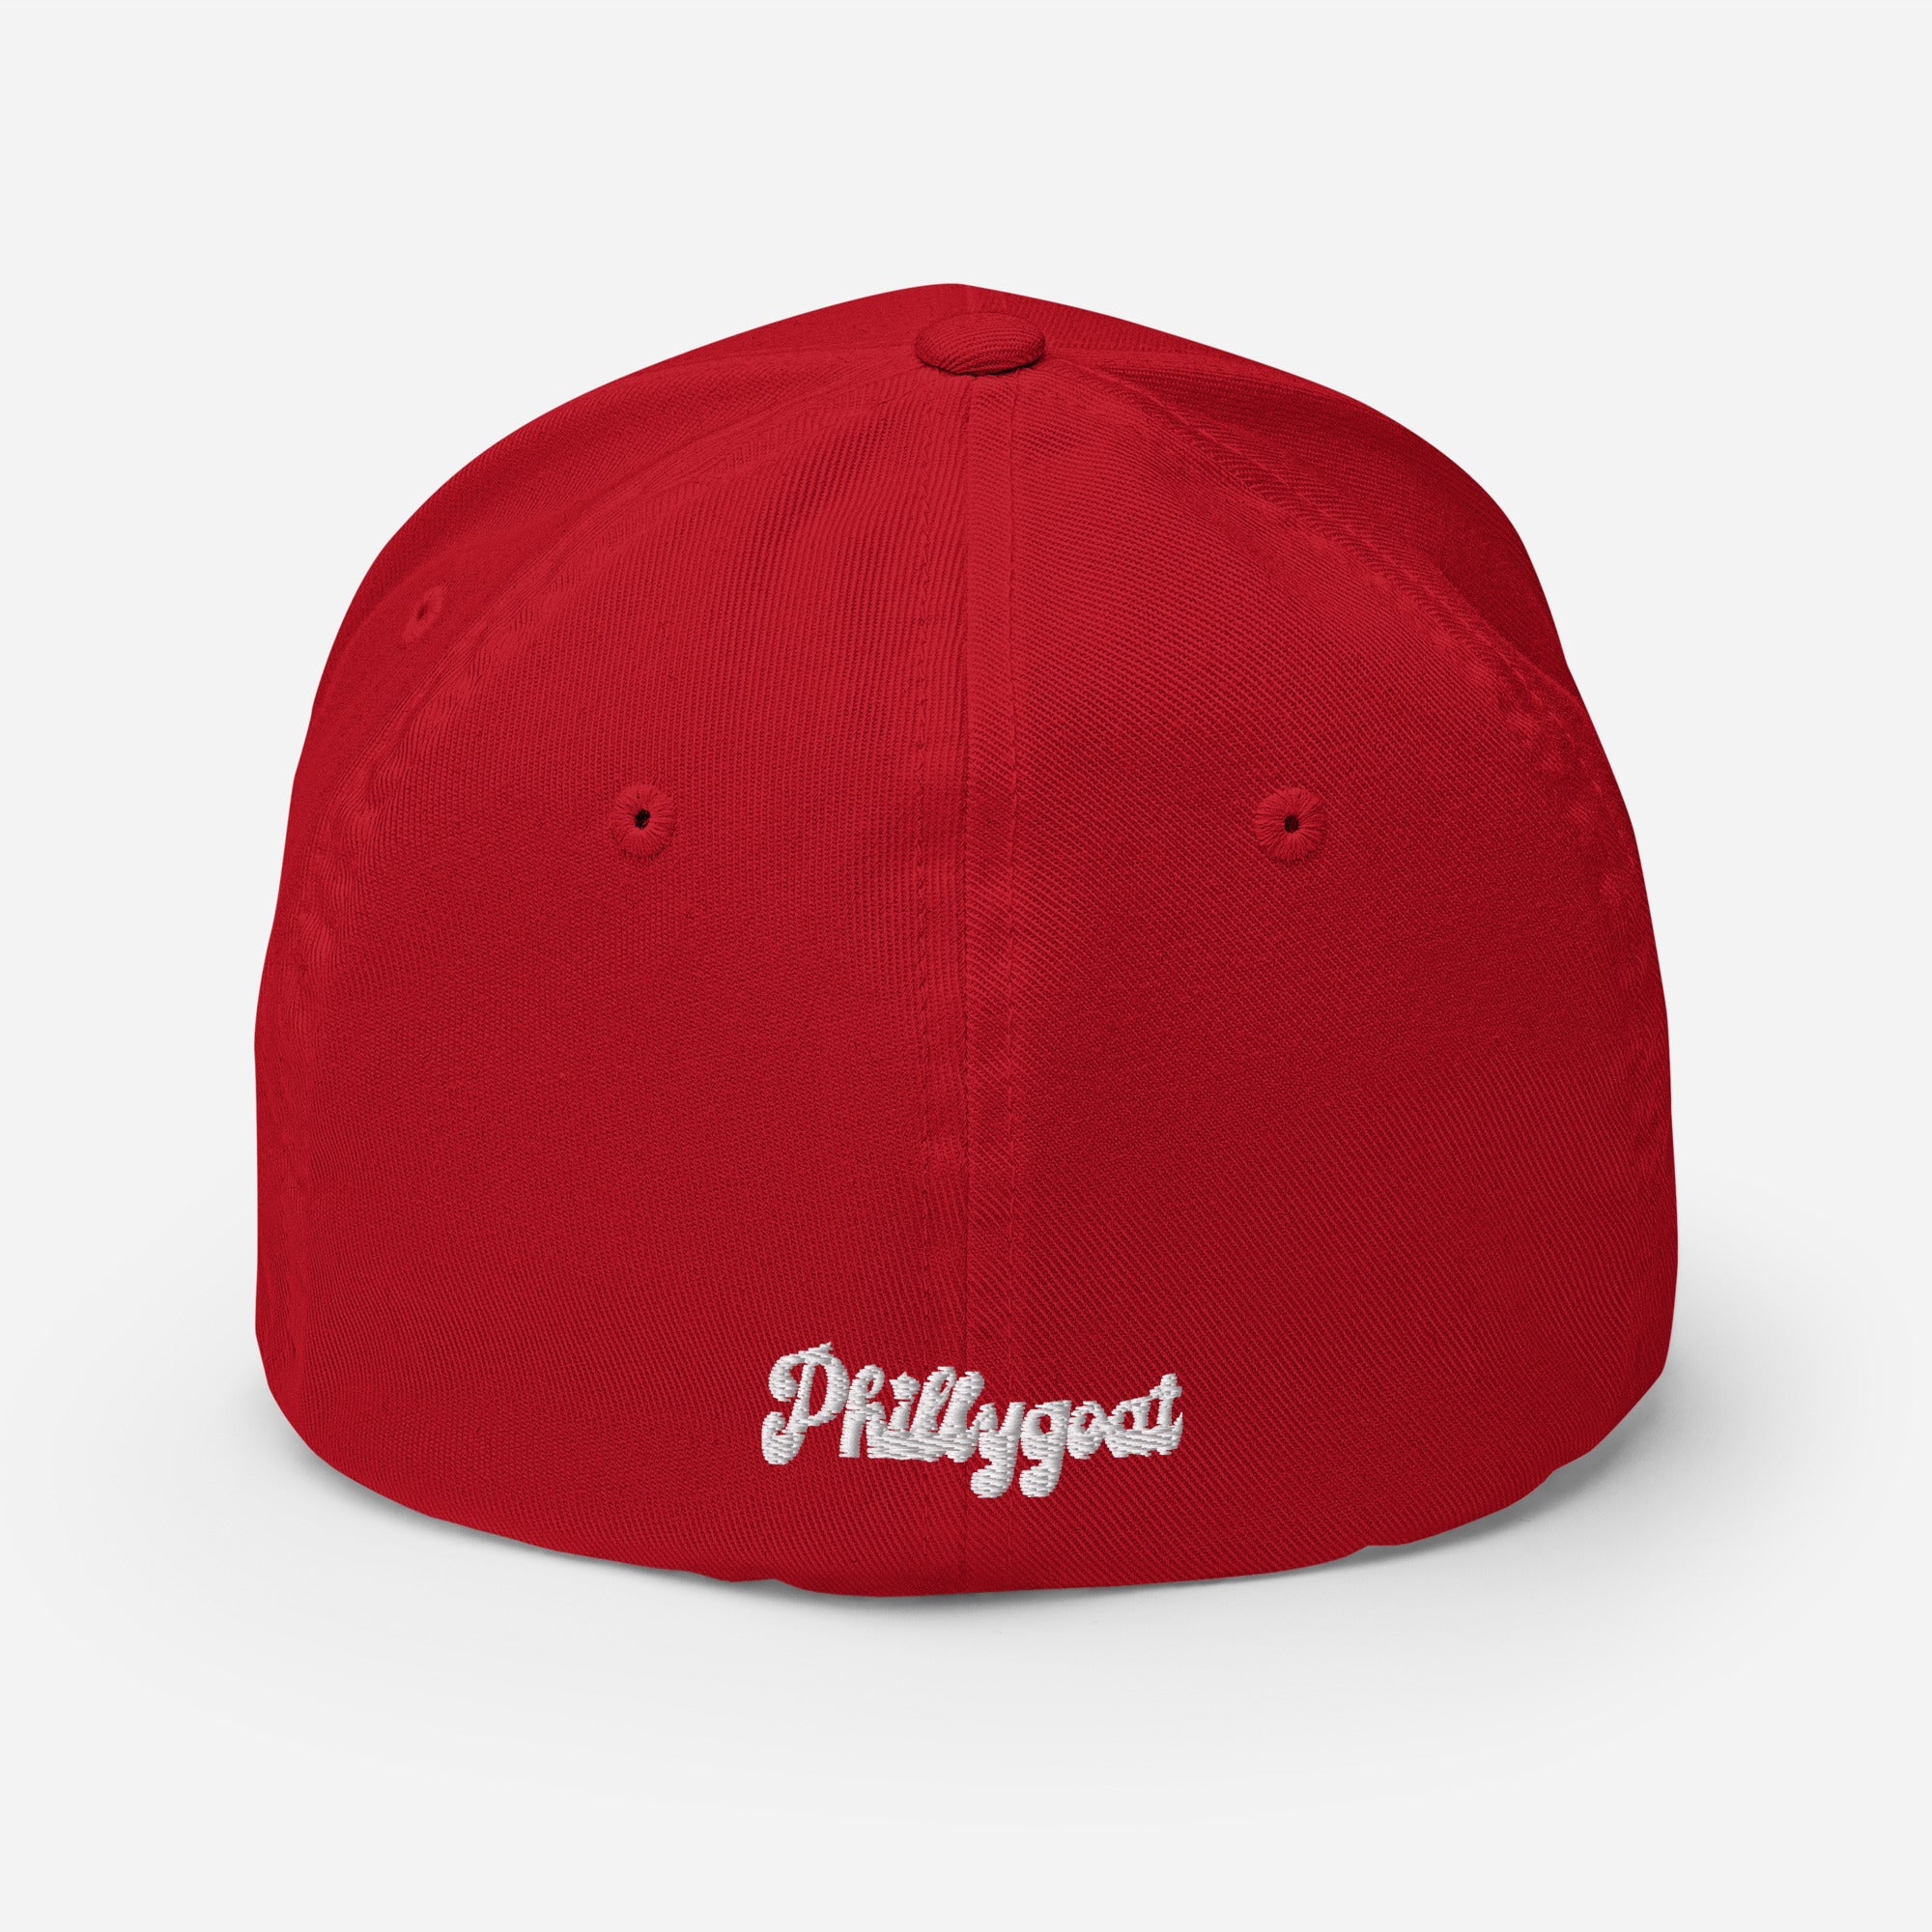 "Phillygoat P" Flexfit Hat